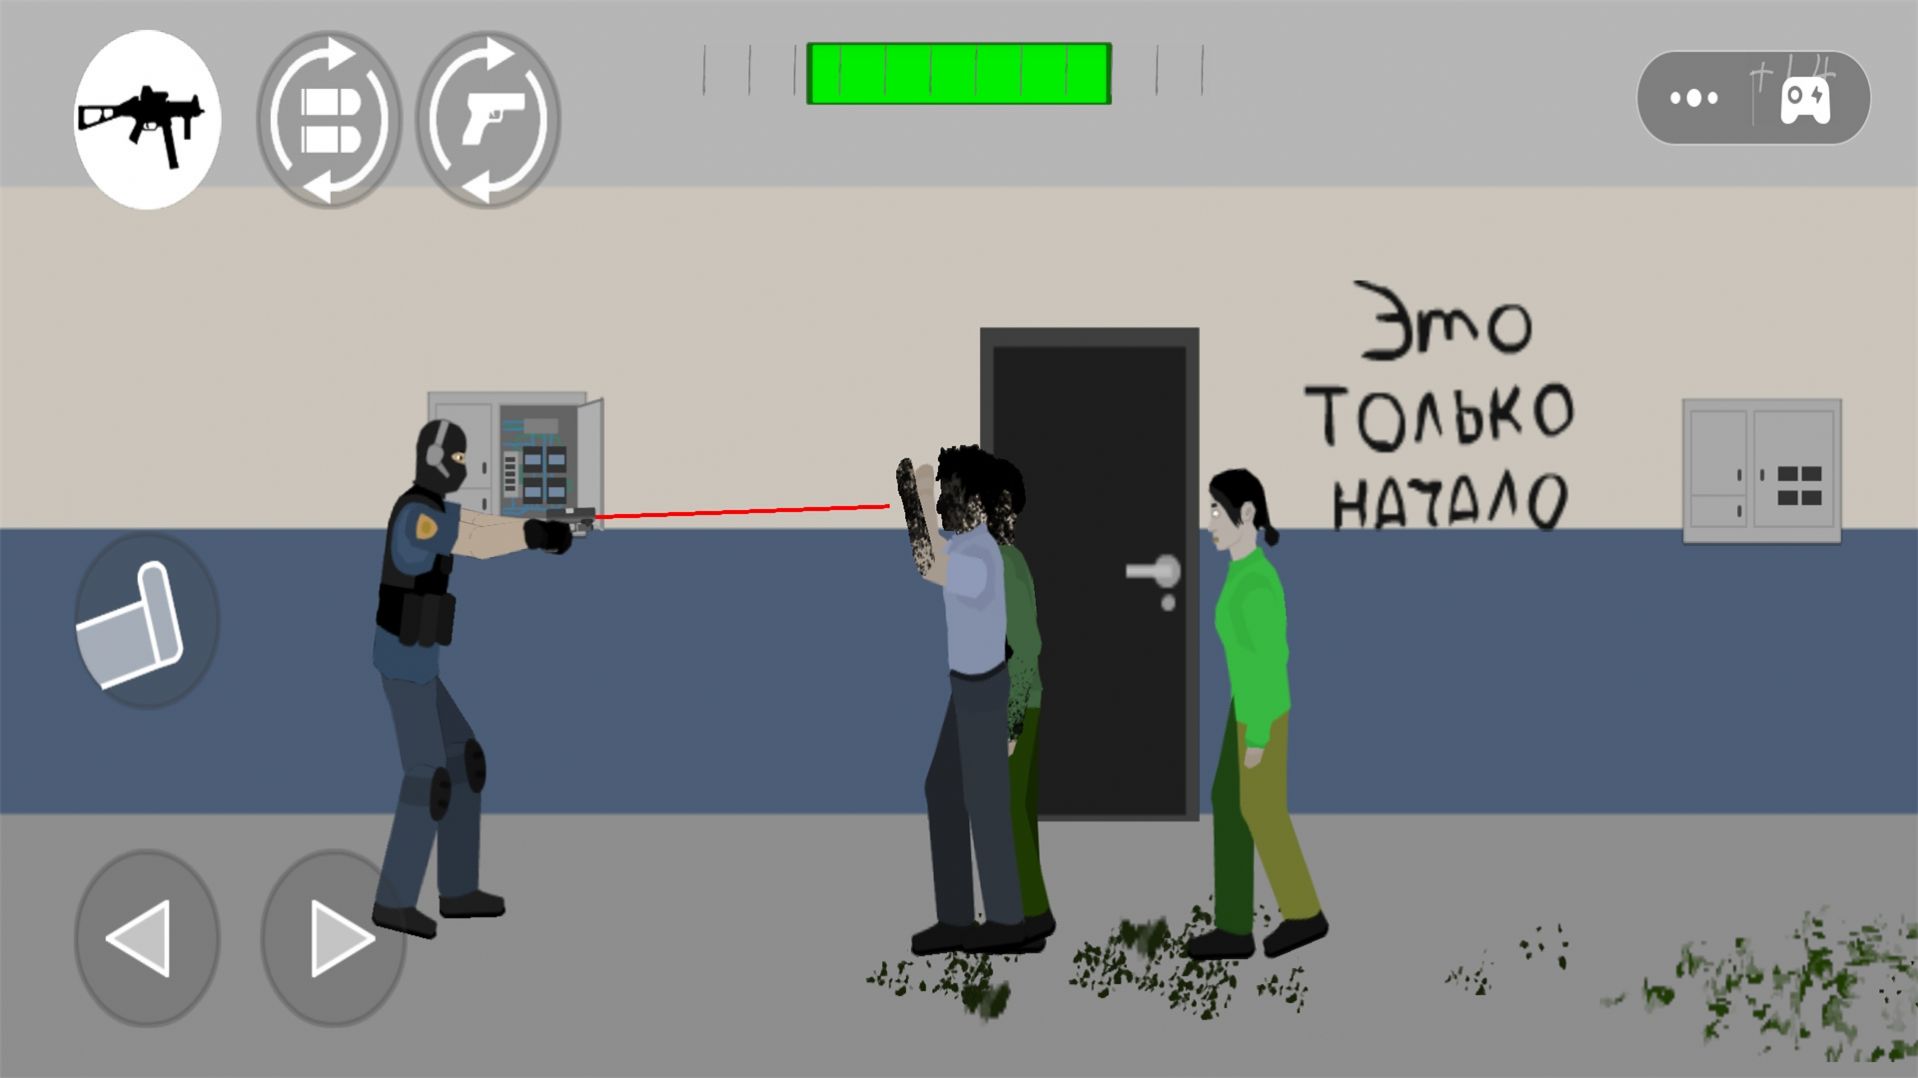 正义警察模拟器游戏图2